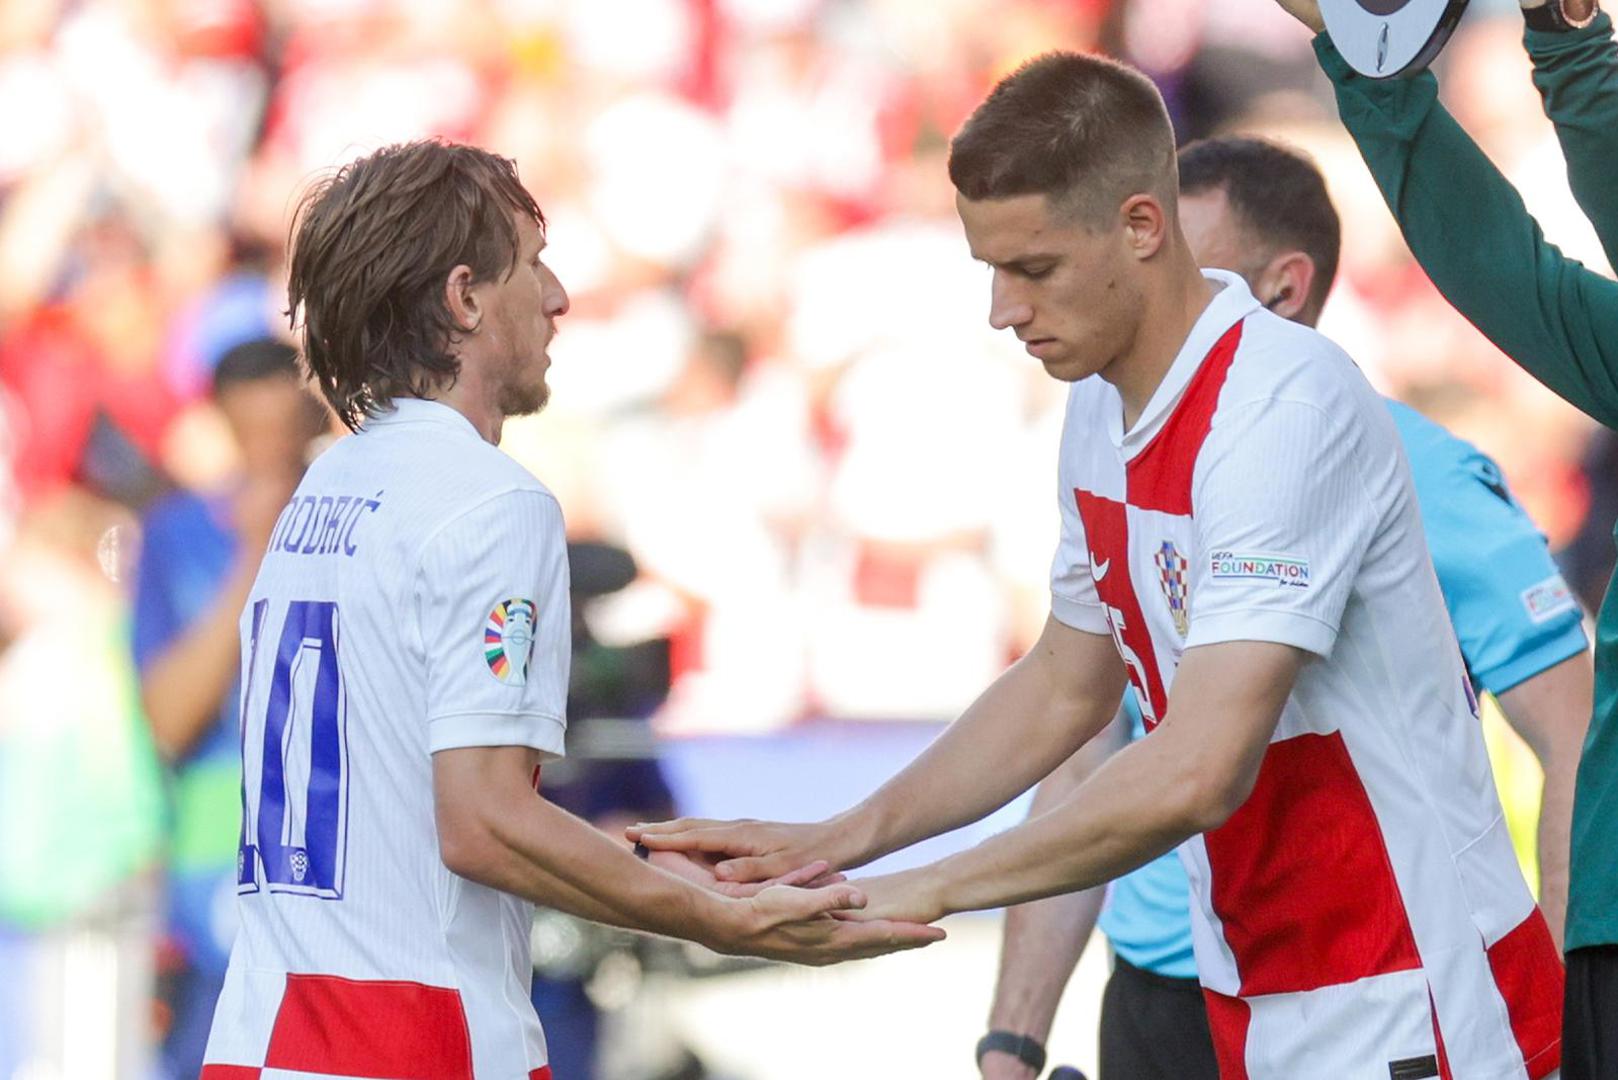 Utučen je bio i kapetan hrvatske reprezentacije Luka Modrić nakon teškog poraza. Kamera ga je uhvatila kako se u dva navrata u nevjerici drži za glavu te nervozno raspravlja sa suigračima. 